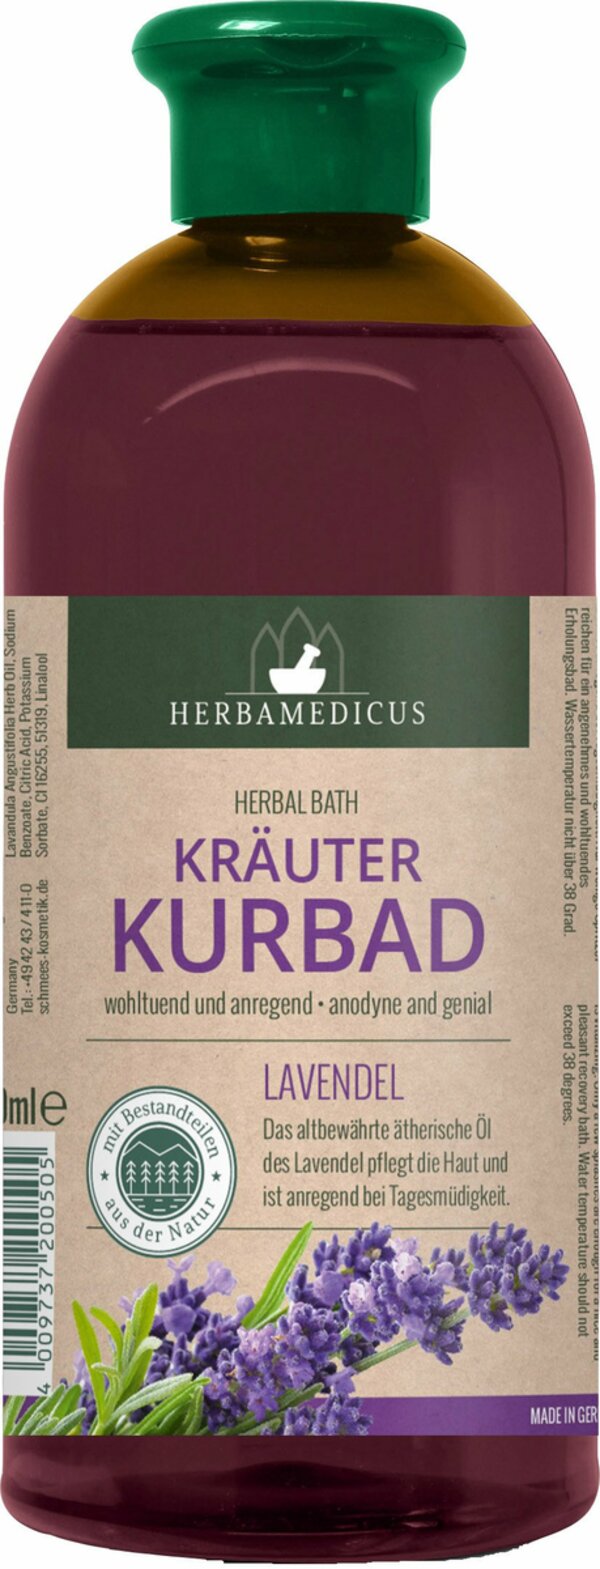 Bild 1 von Kräuterbad 'Lavendel' mit natürlichen ätherischen Ölen